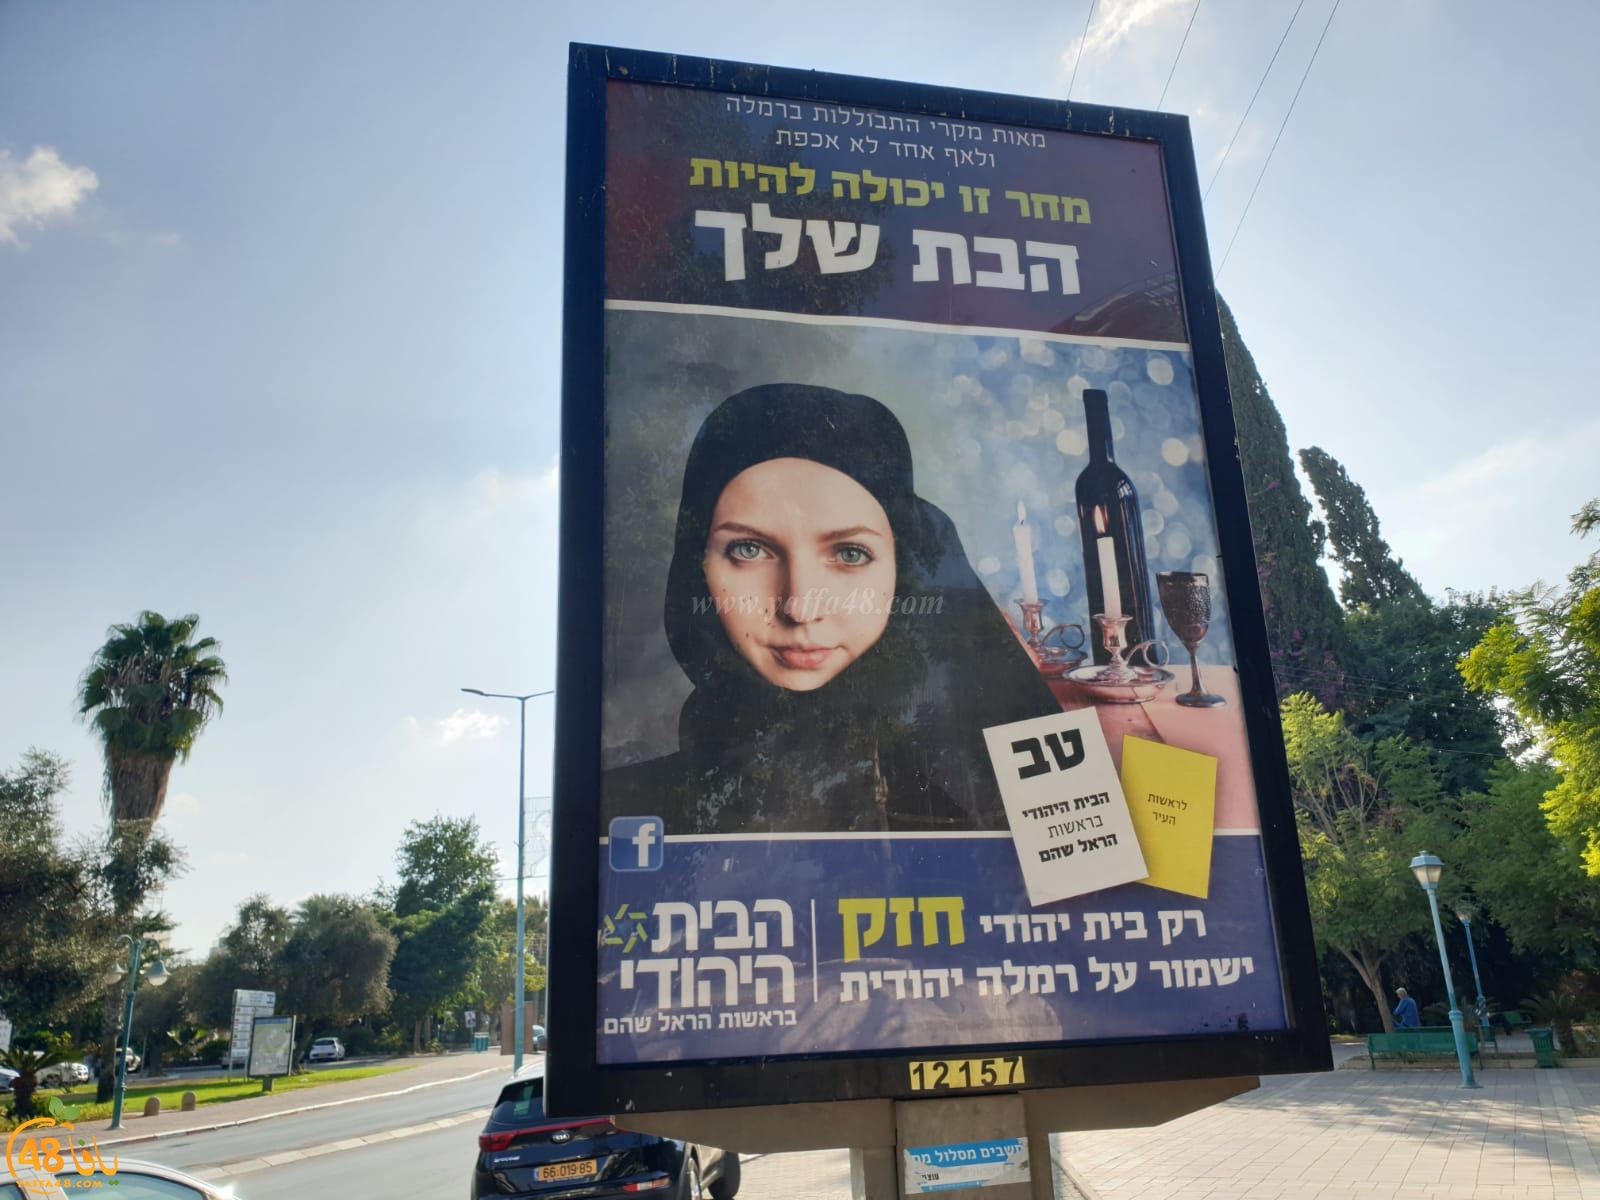  عدوى العنصرية تصل الى الرملة - تحريض على الحجاب ضمن حملة دعائية للبيت اليهودي